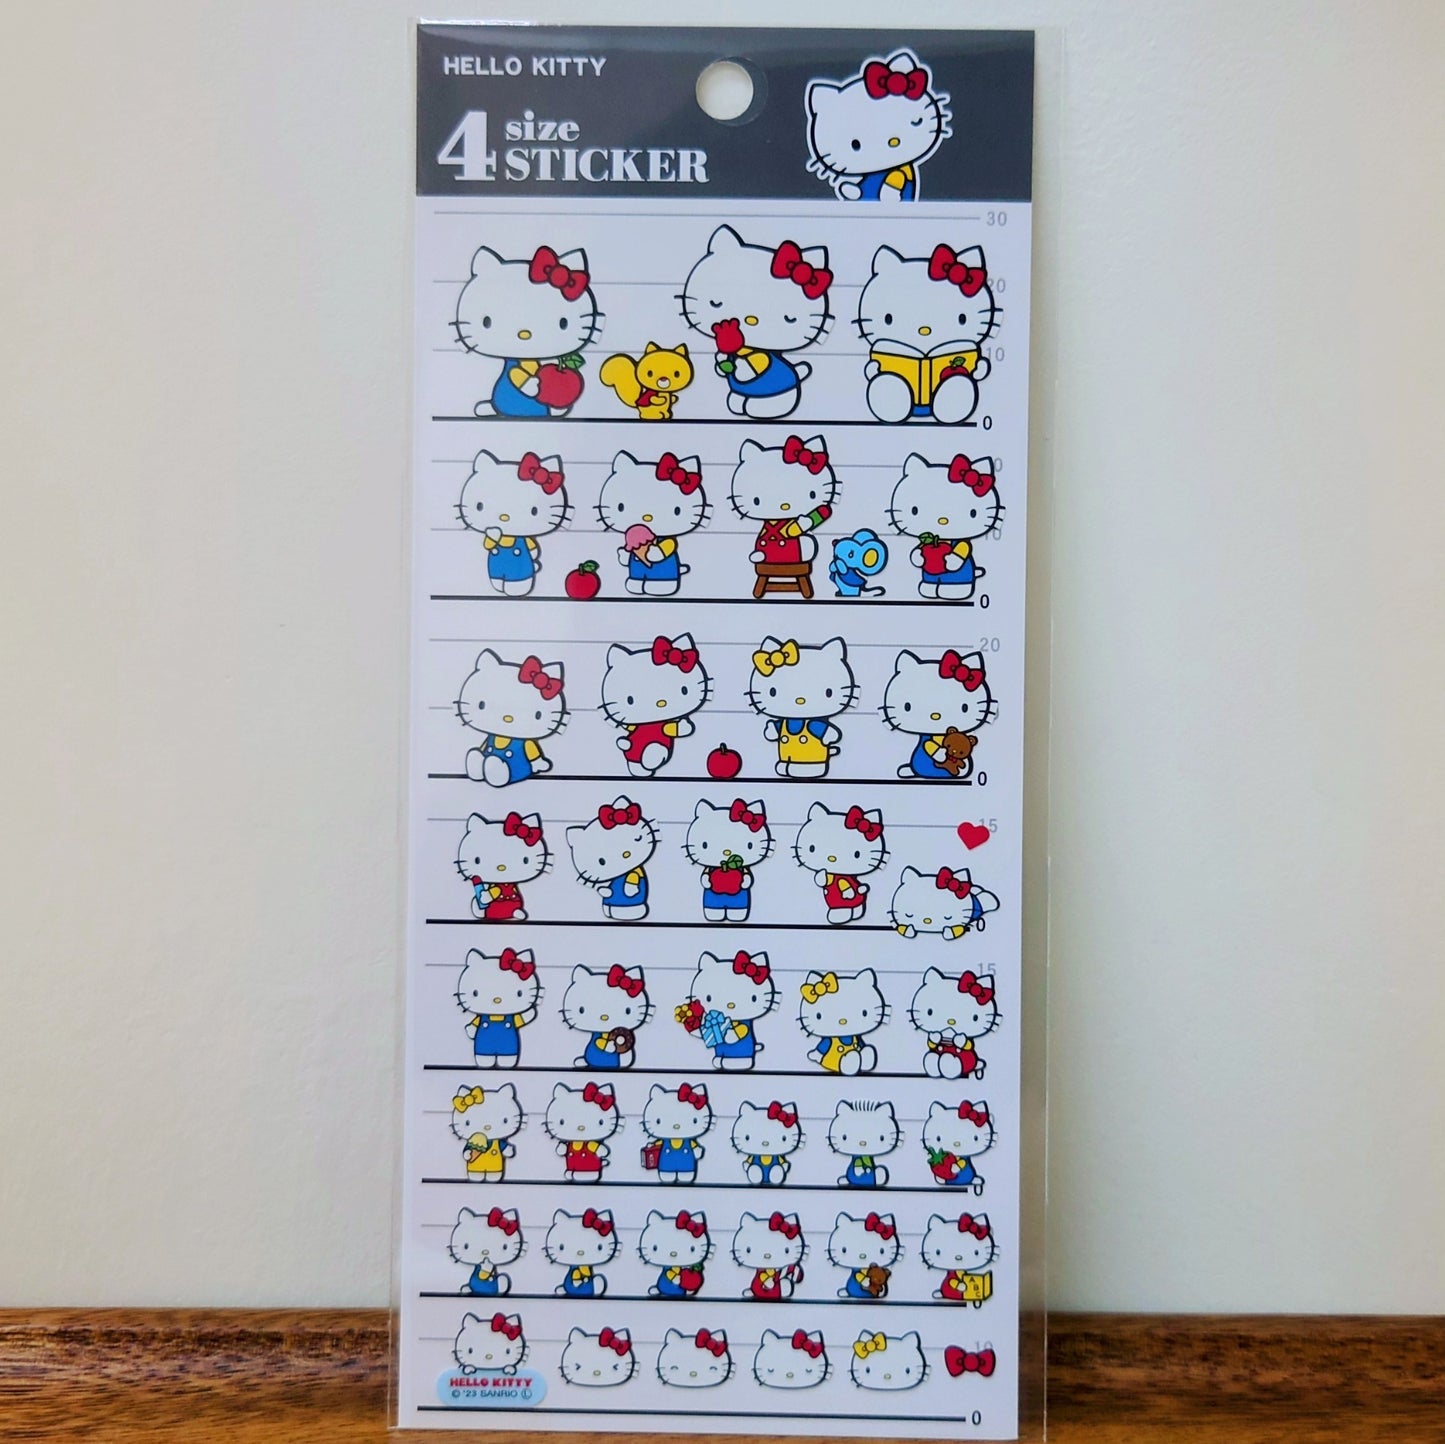 4 size sticker Hello Kitty